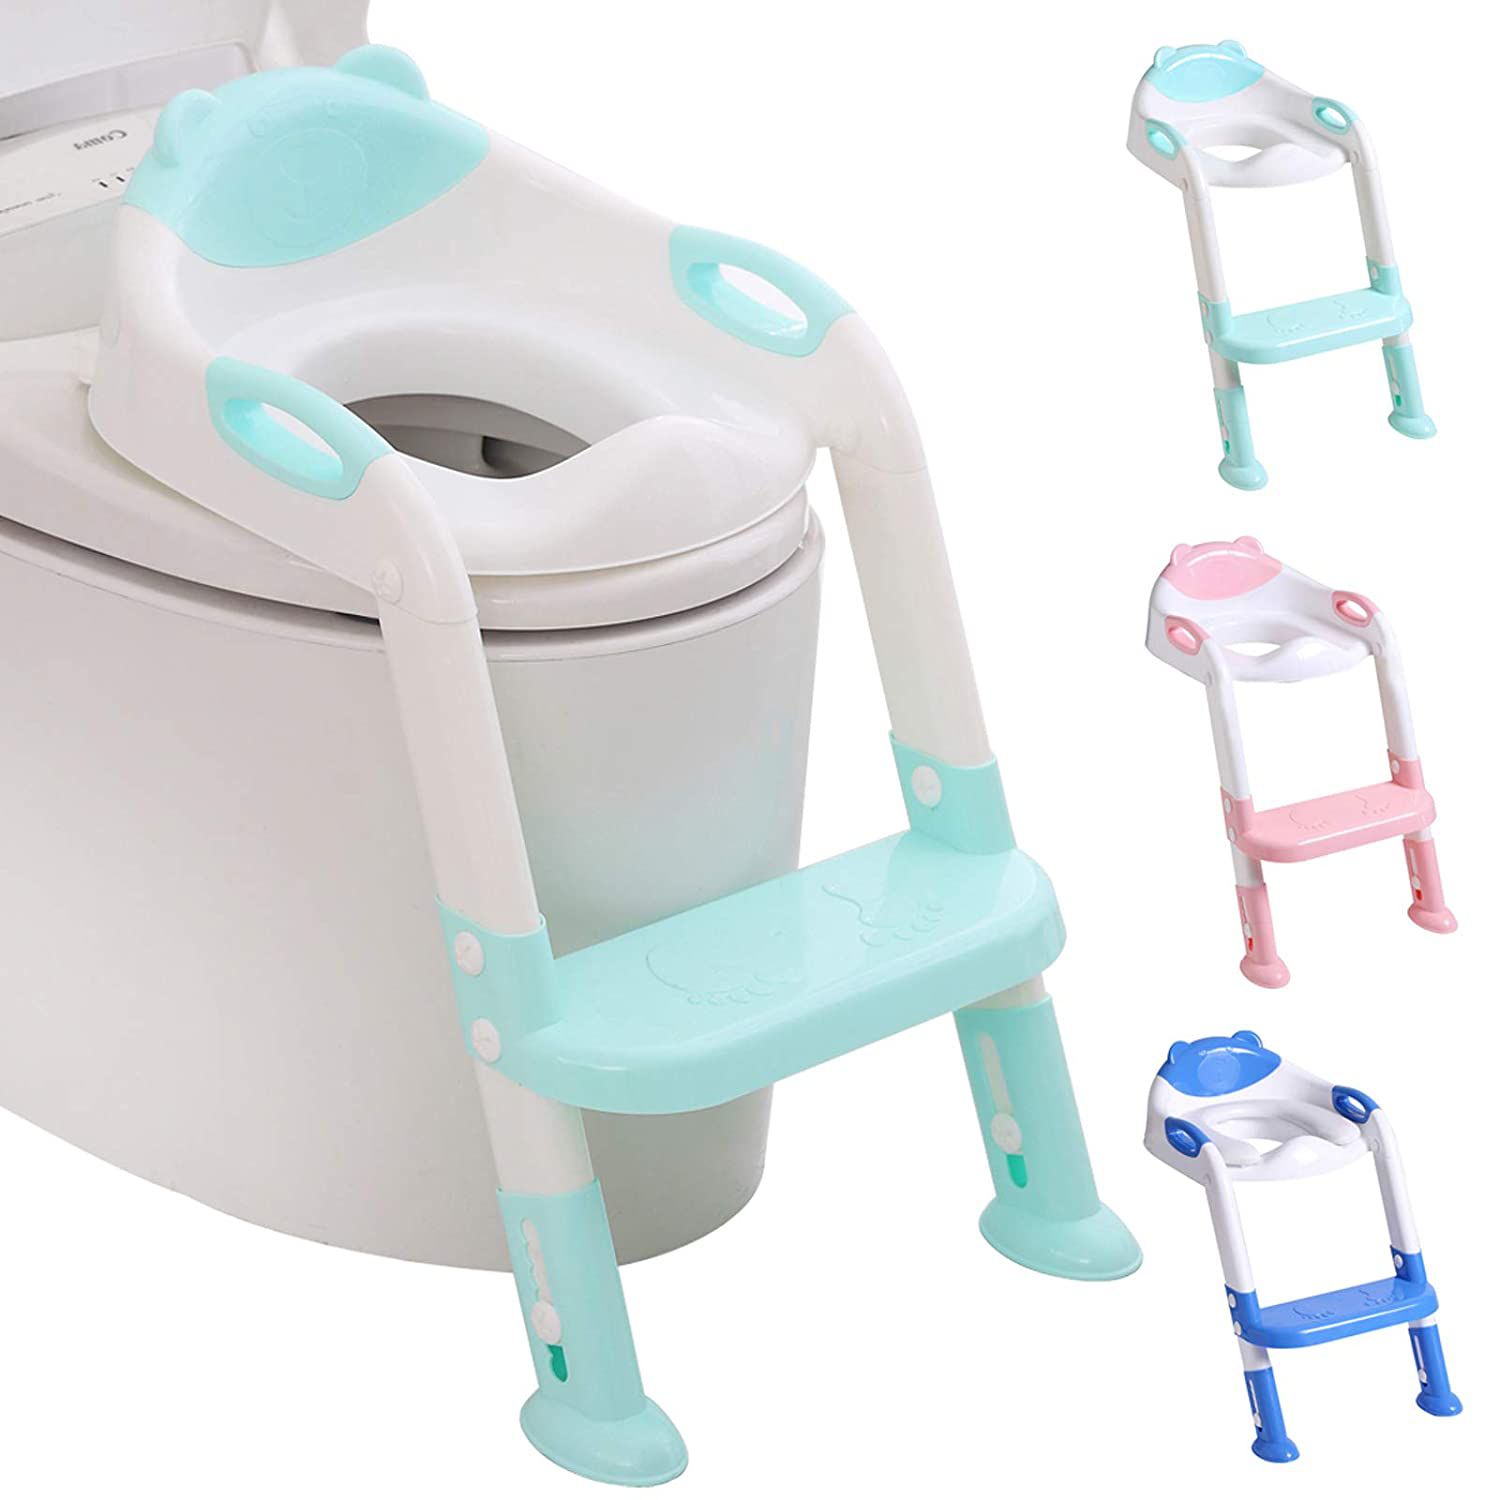 711TEK Potty Training Seat Toddler Toilet Seat